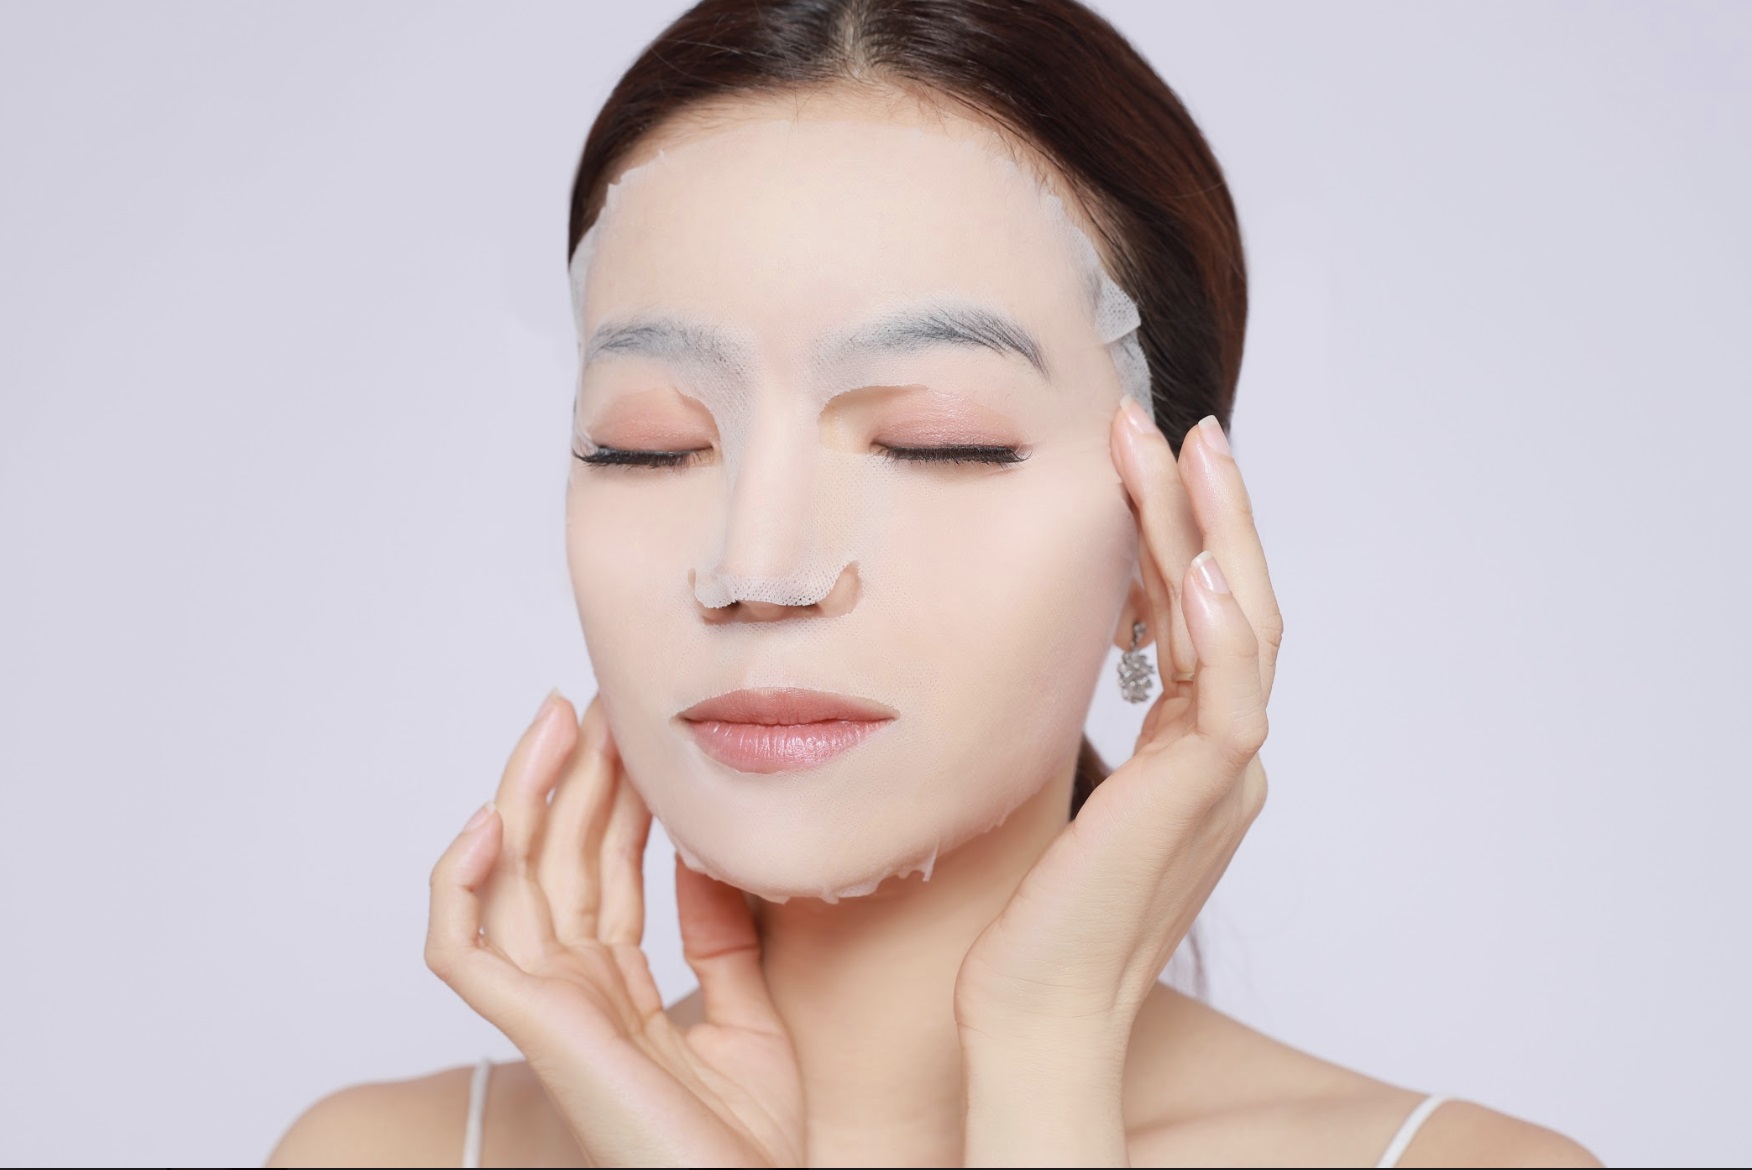   Bạn có thể nuôi dưỡng làn da khô bằng cách đắp mặt nạ hàng tuần  